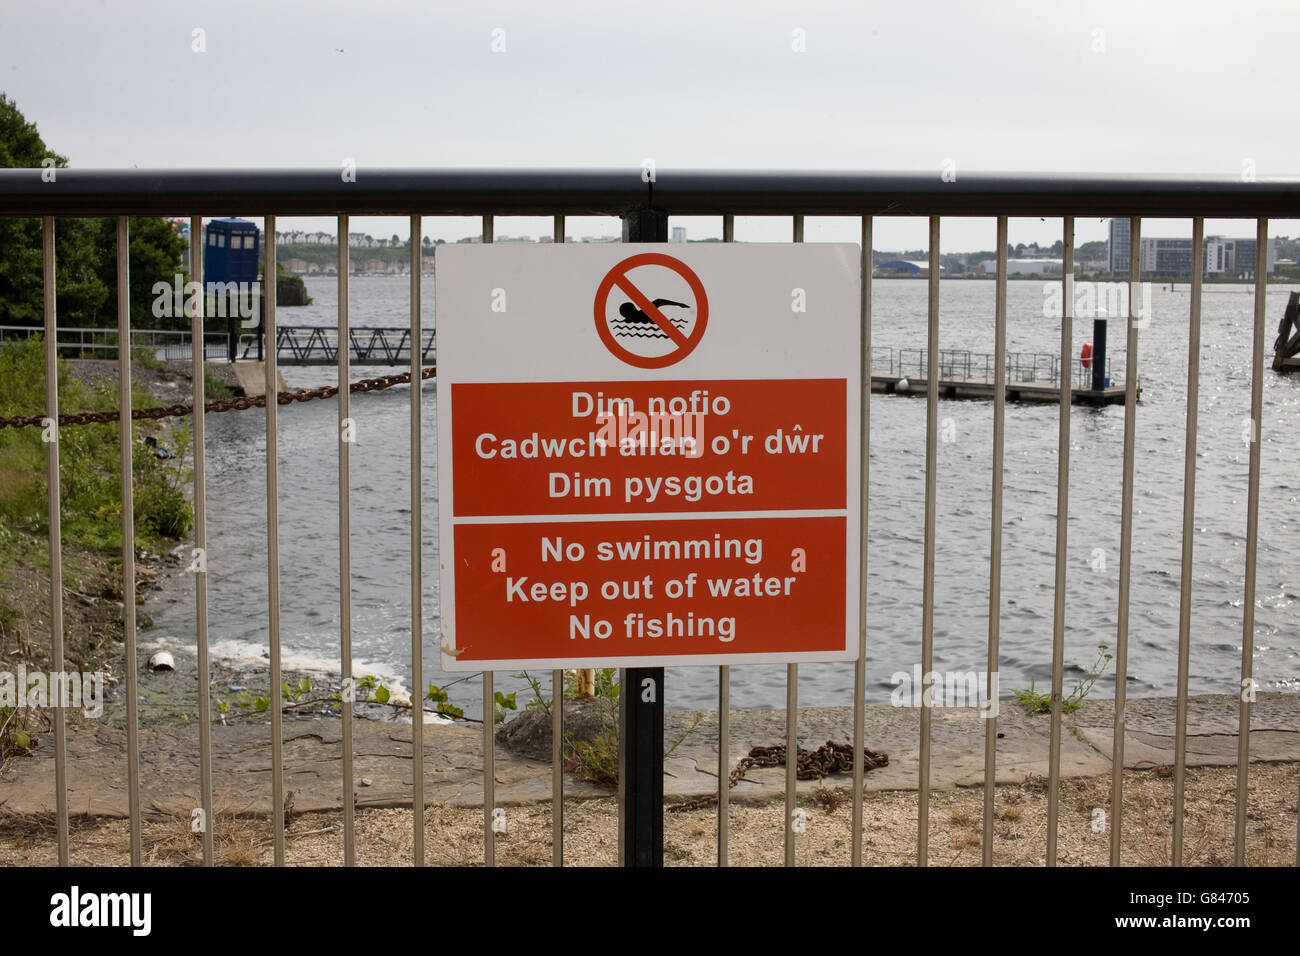 No hay piscina, mantener fuera del agua, no hay pesca" bilingüe en inglés y galés signo en la baranda de metal en la Bahía de Cardiff. Foto de stock